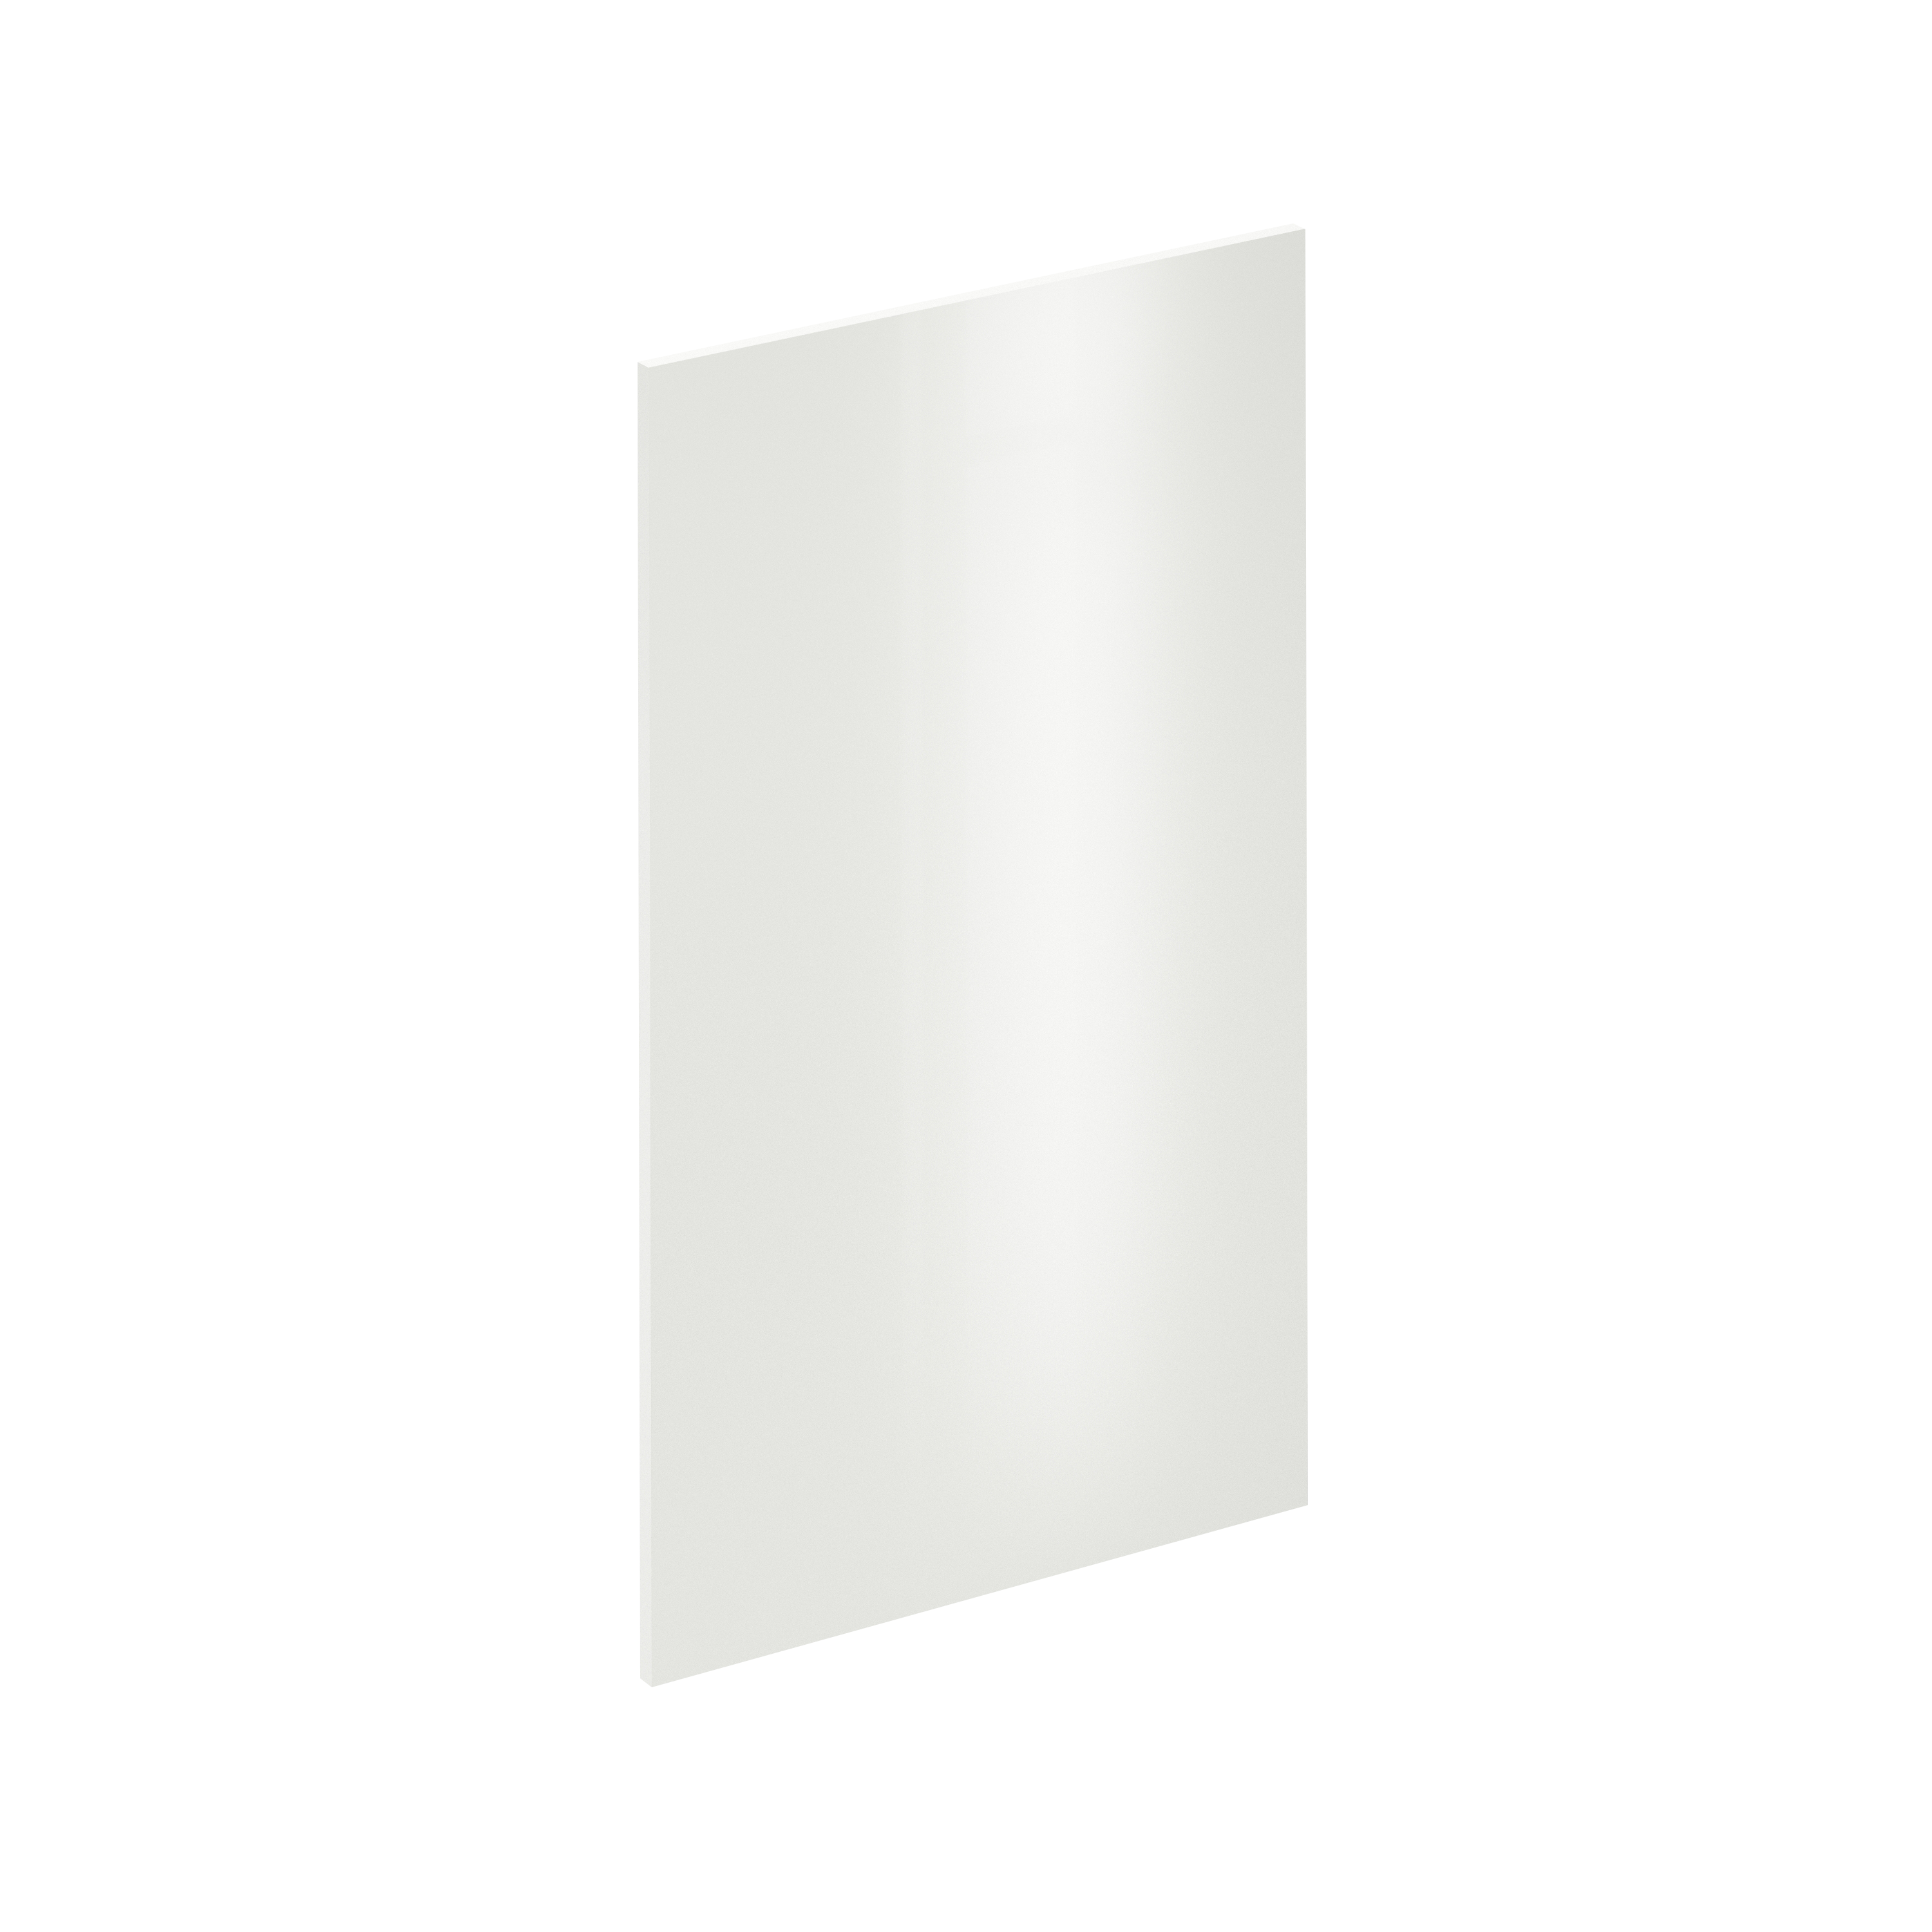 Puerta para mueble de cocina sevilla blanco brillo h 102.4 x l 60 cm